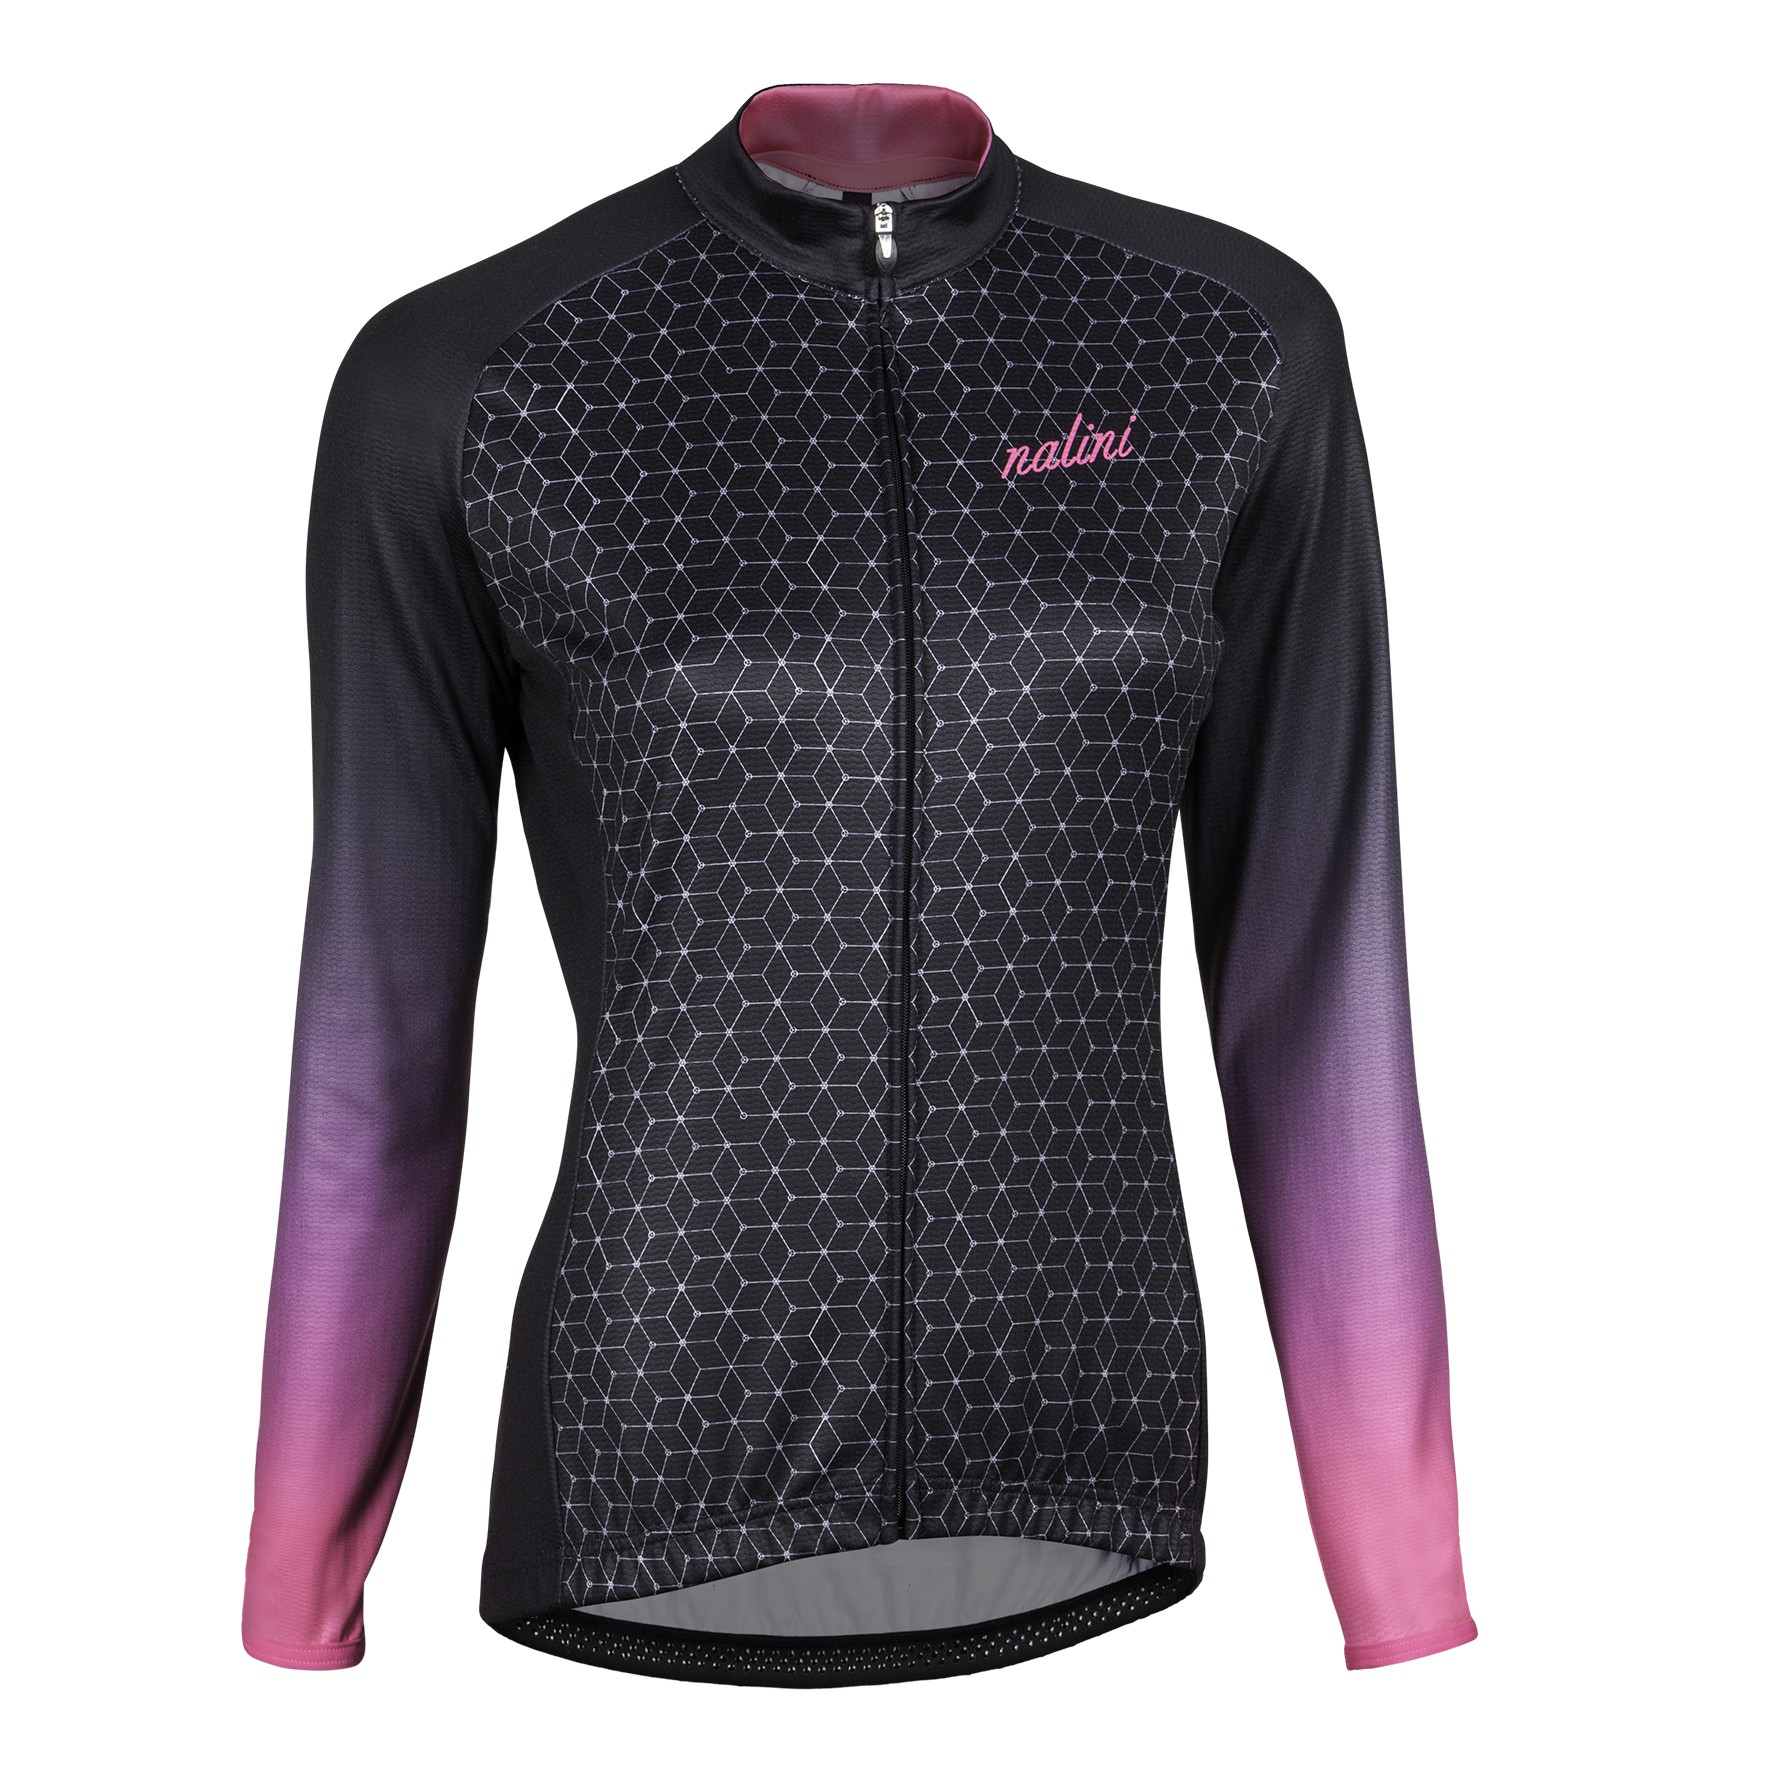 Nalini kaus maillot de cyclisme femme manches longues noir rose